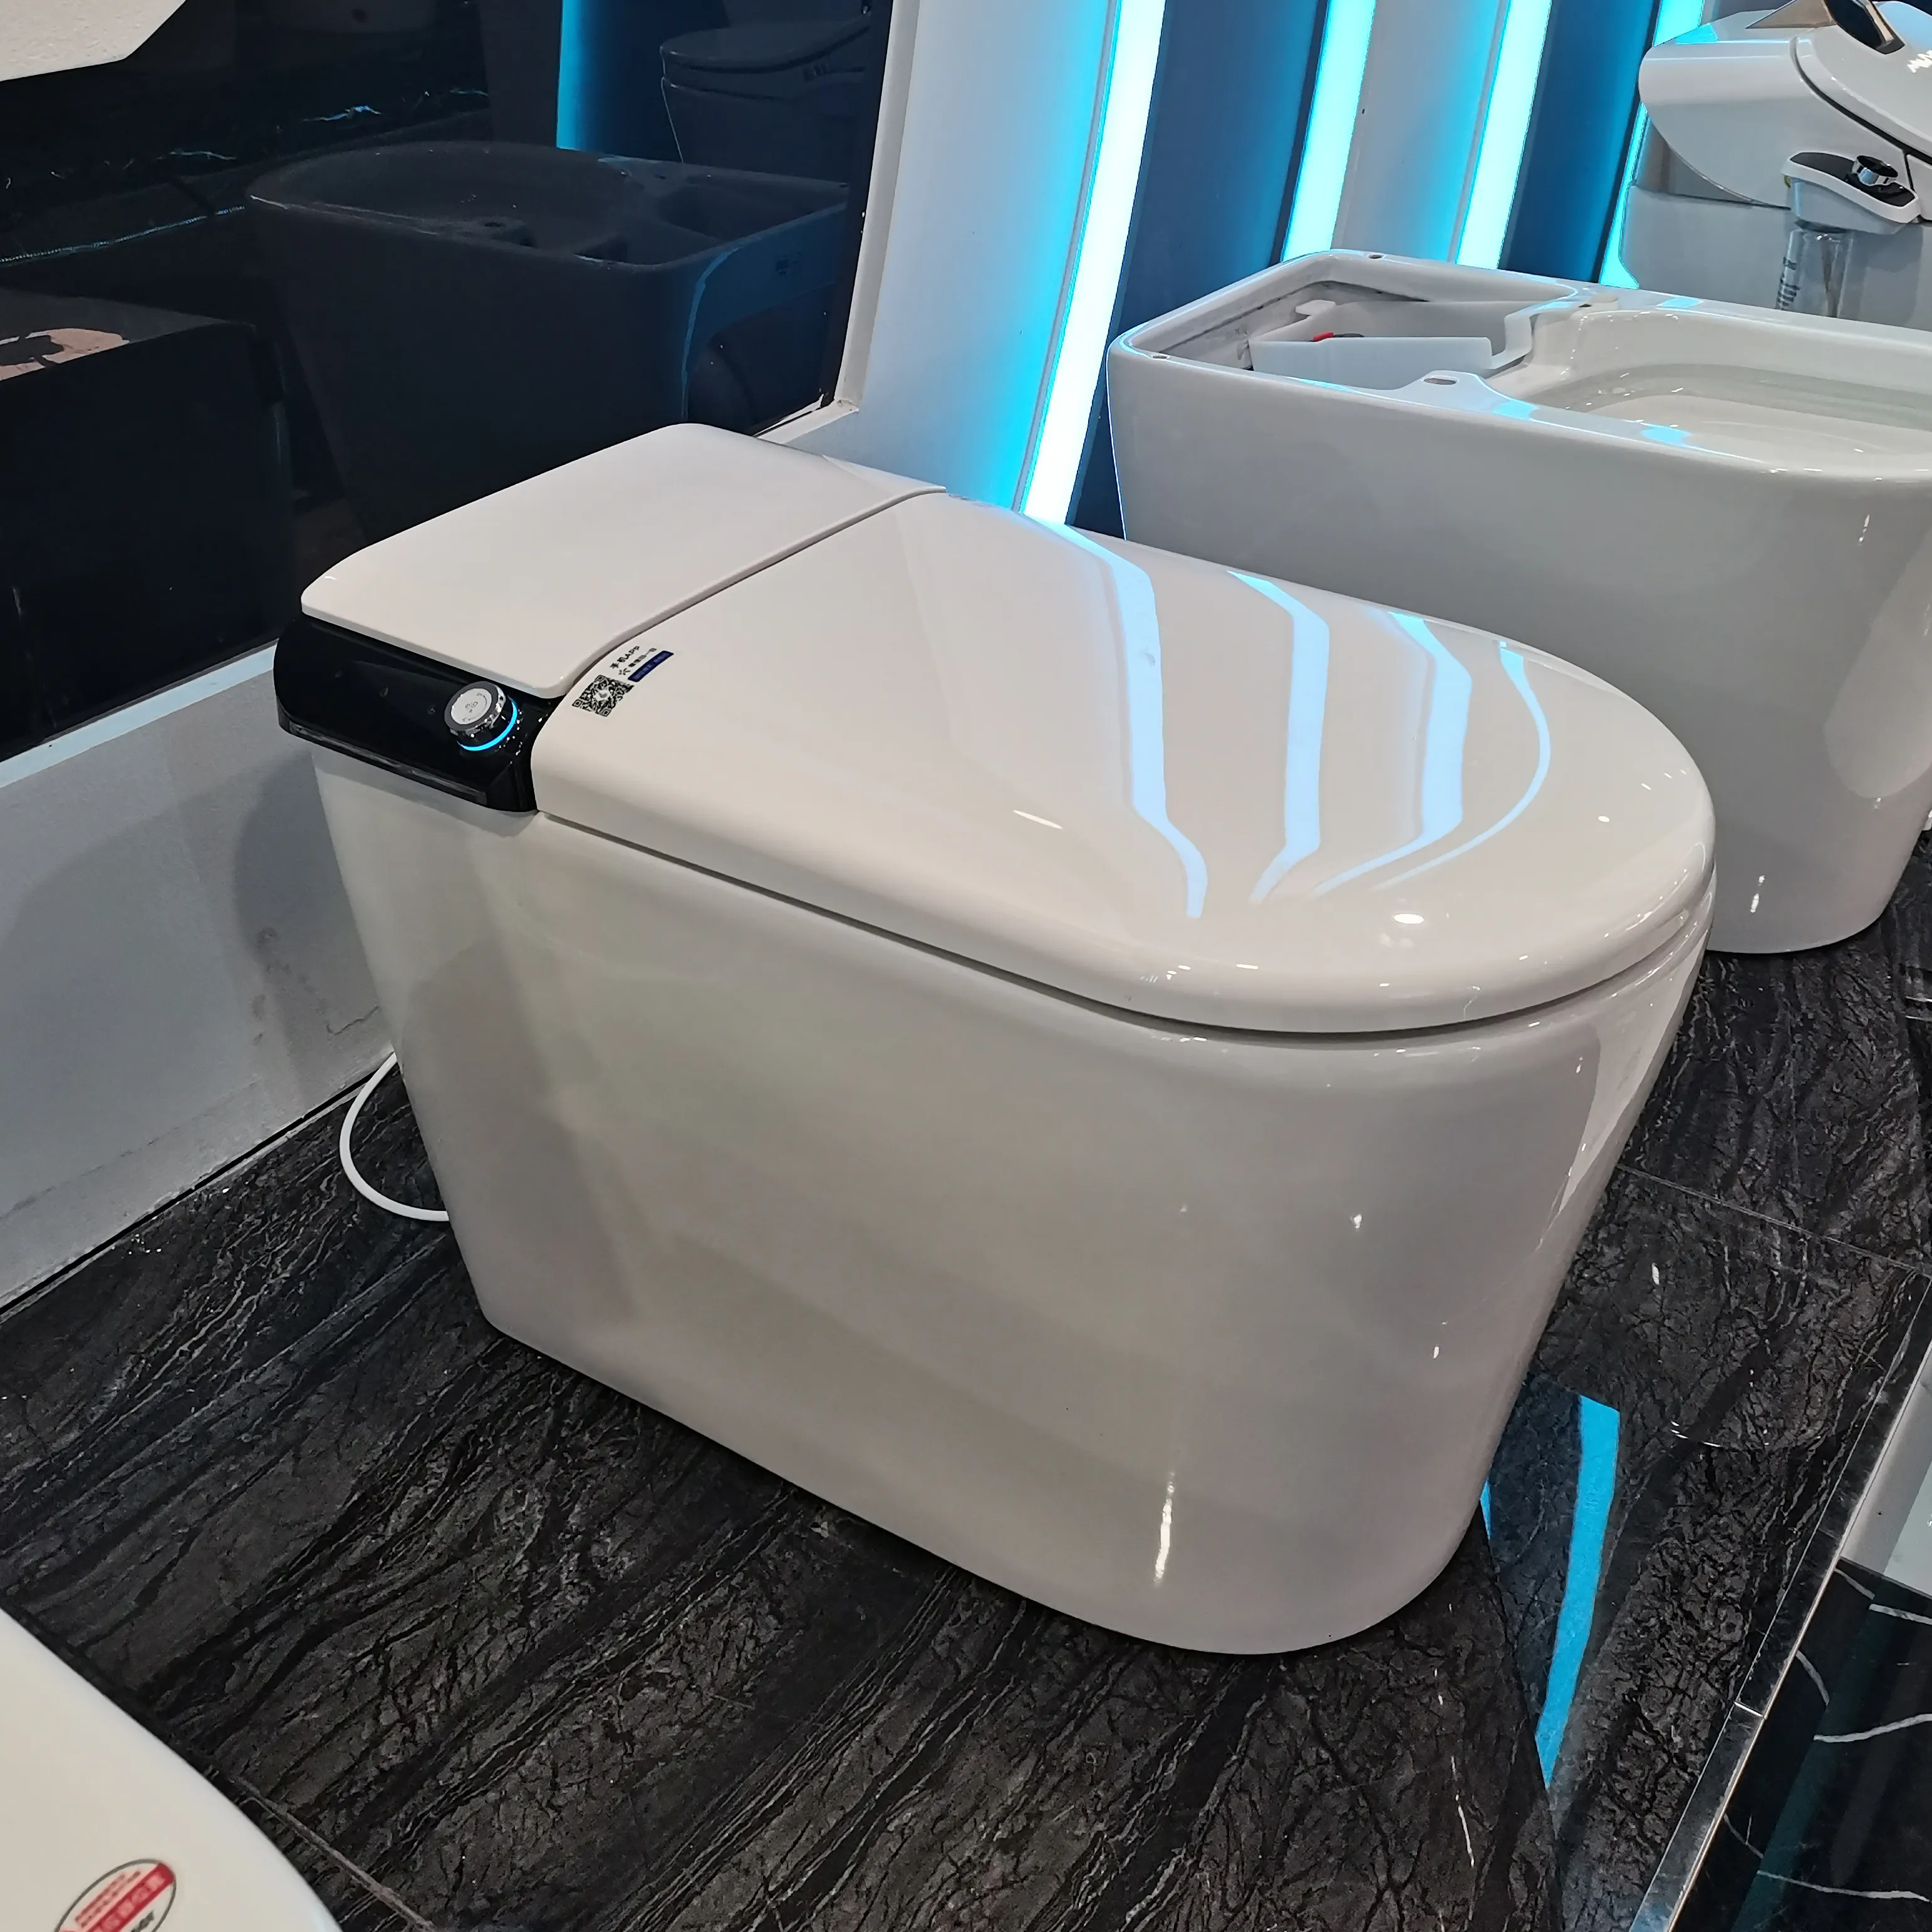 Tanpa bingkai s-trap sanitasi Ware Sensor otomatis Flushing One-piece Tankless Toilet pintar